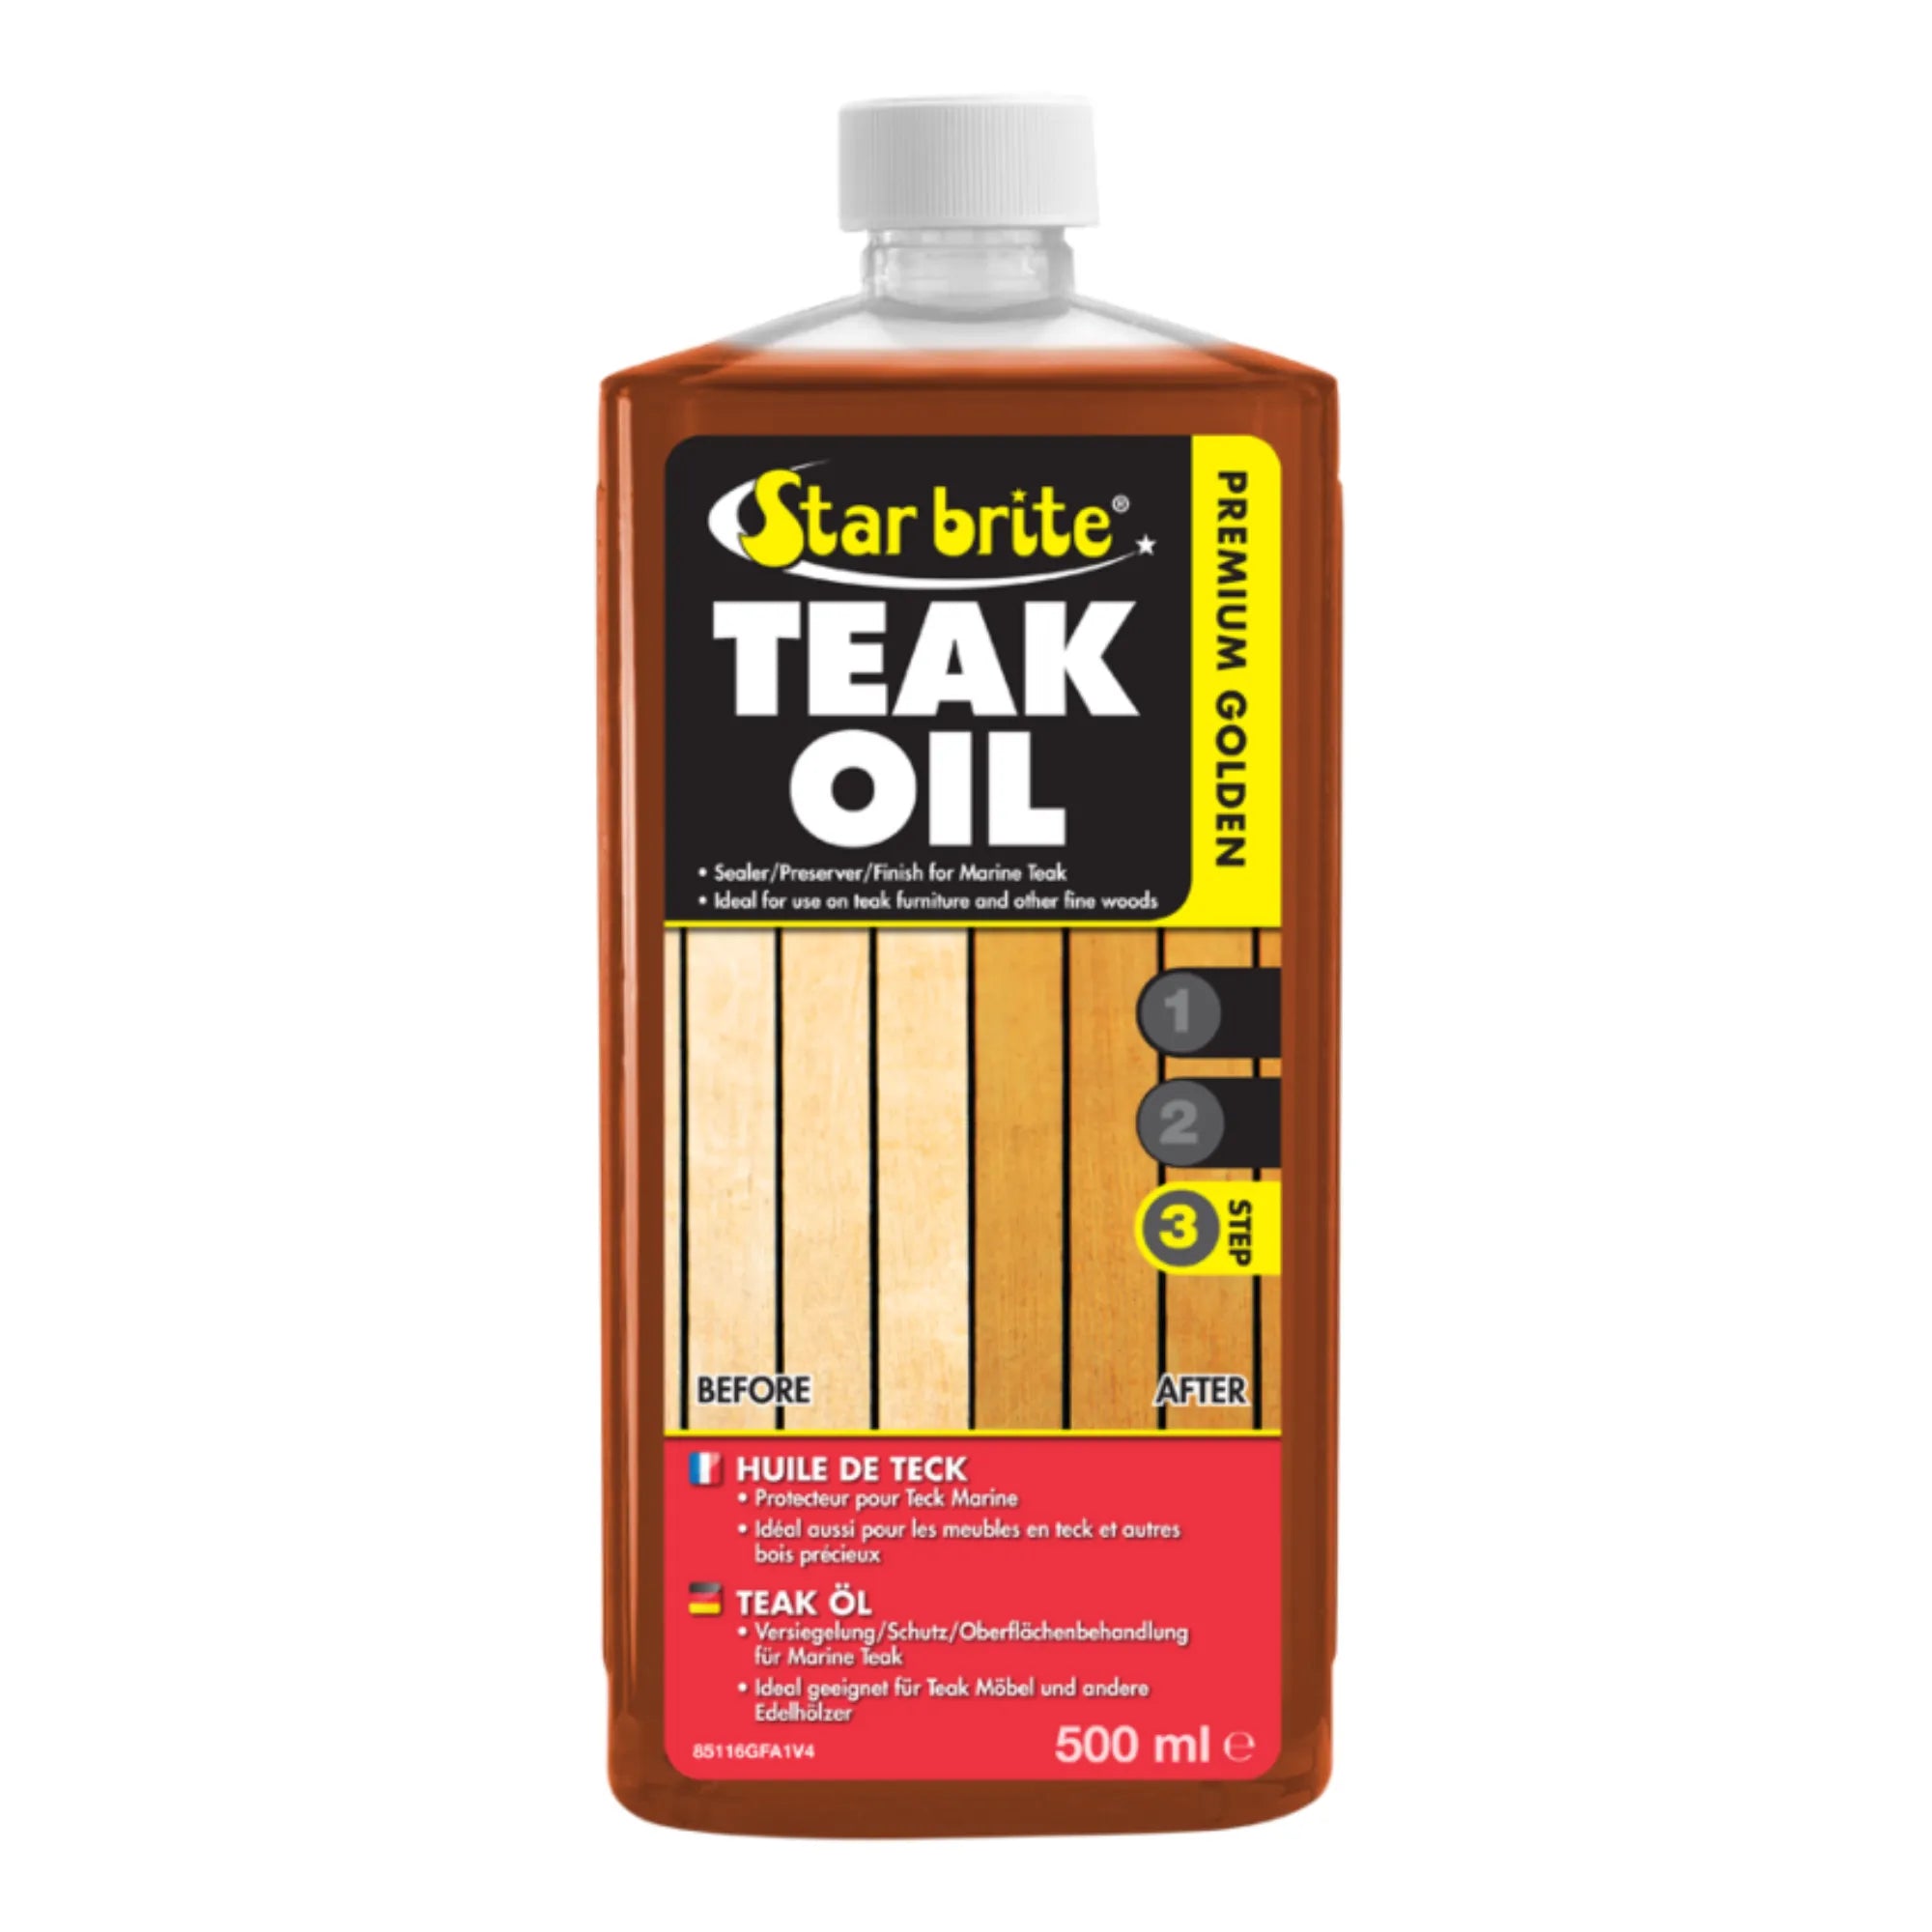 Premium Golden Teak Oil